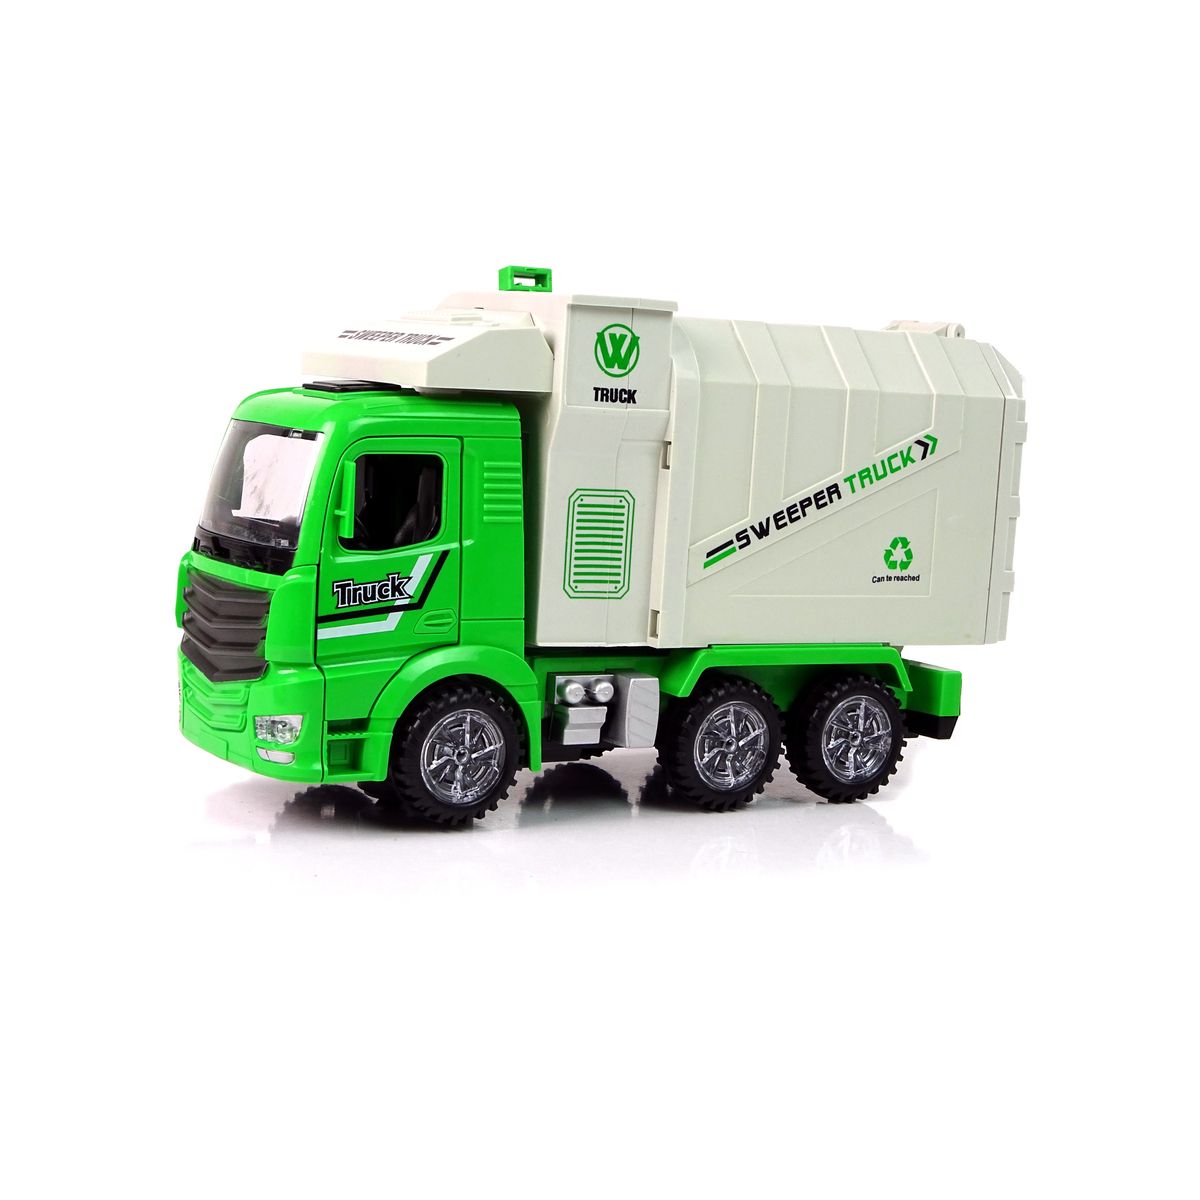 Ciężarówka Śmieciarka Zielona Ruchomy Kontener Świecące Koła Lean (11048)